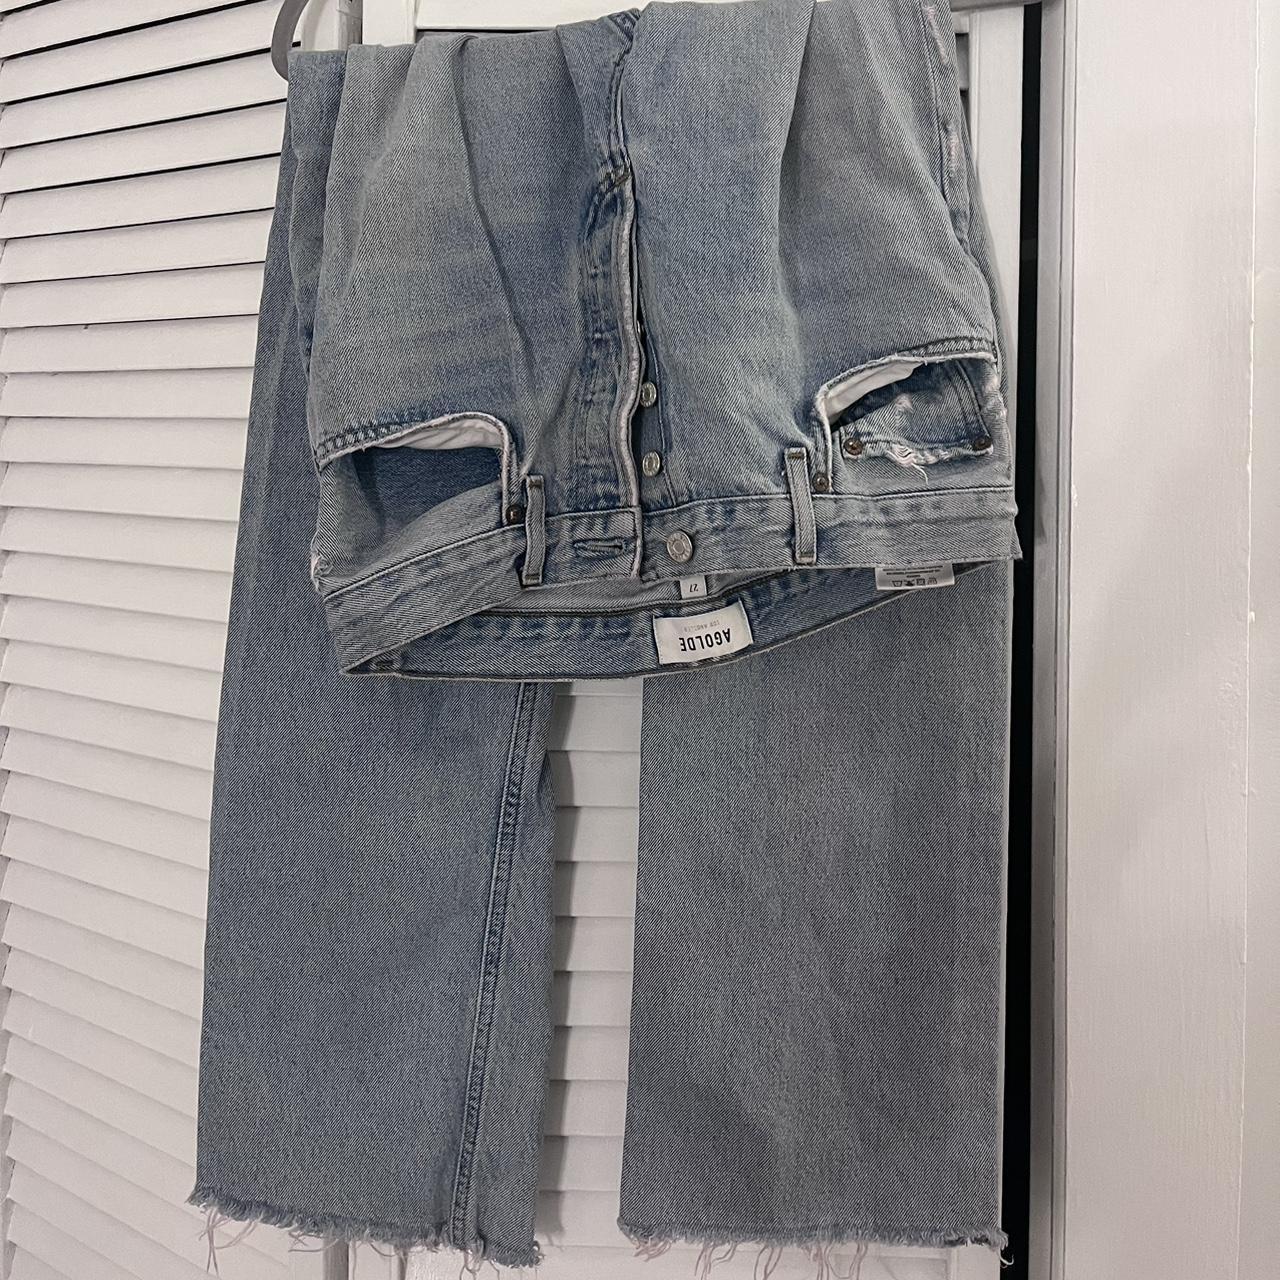 AGOLDE Women's Jeans (3)